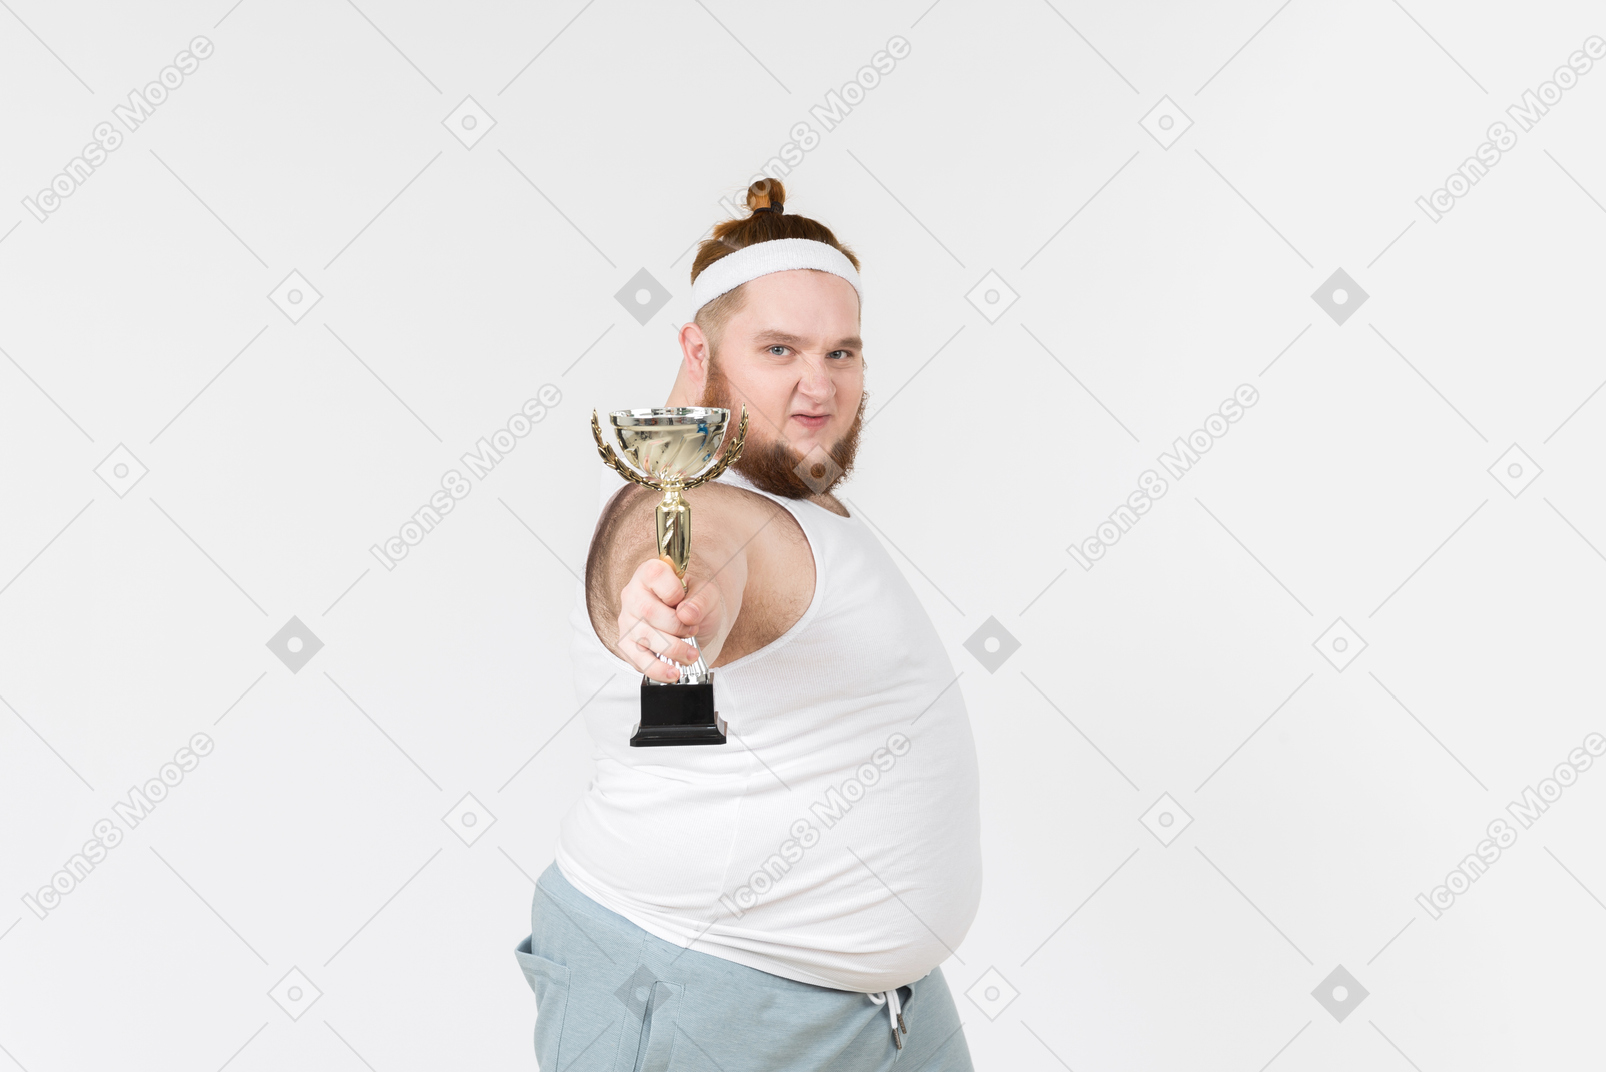 Big guy in sportswear holding trophy